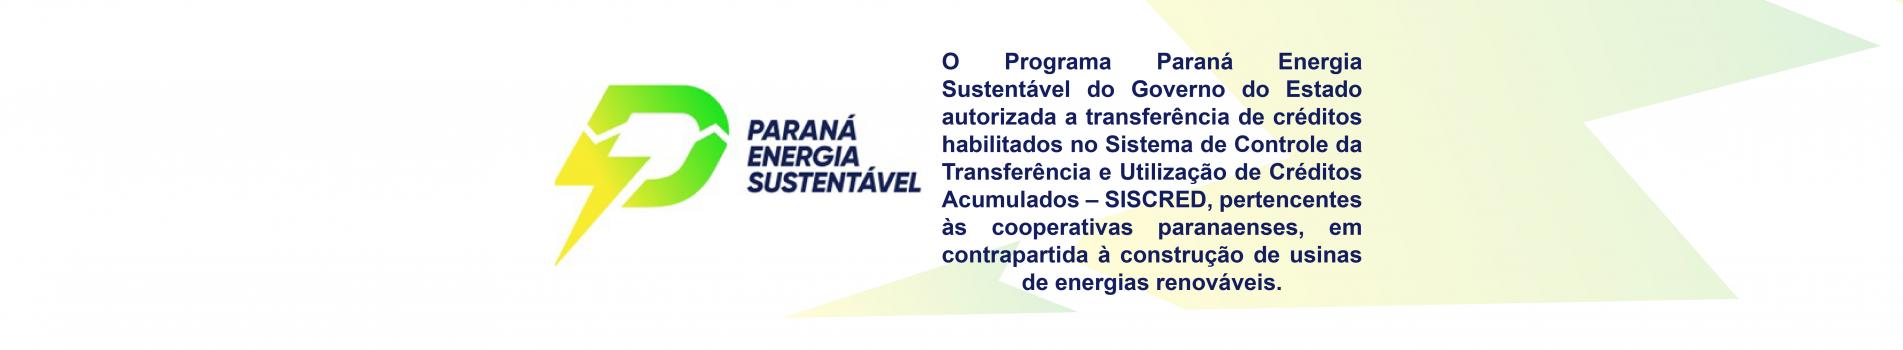 Programa Paraná Energia Sustentável